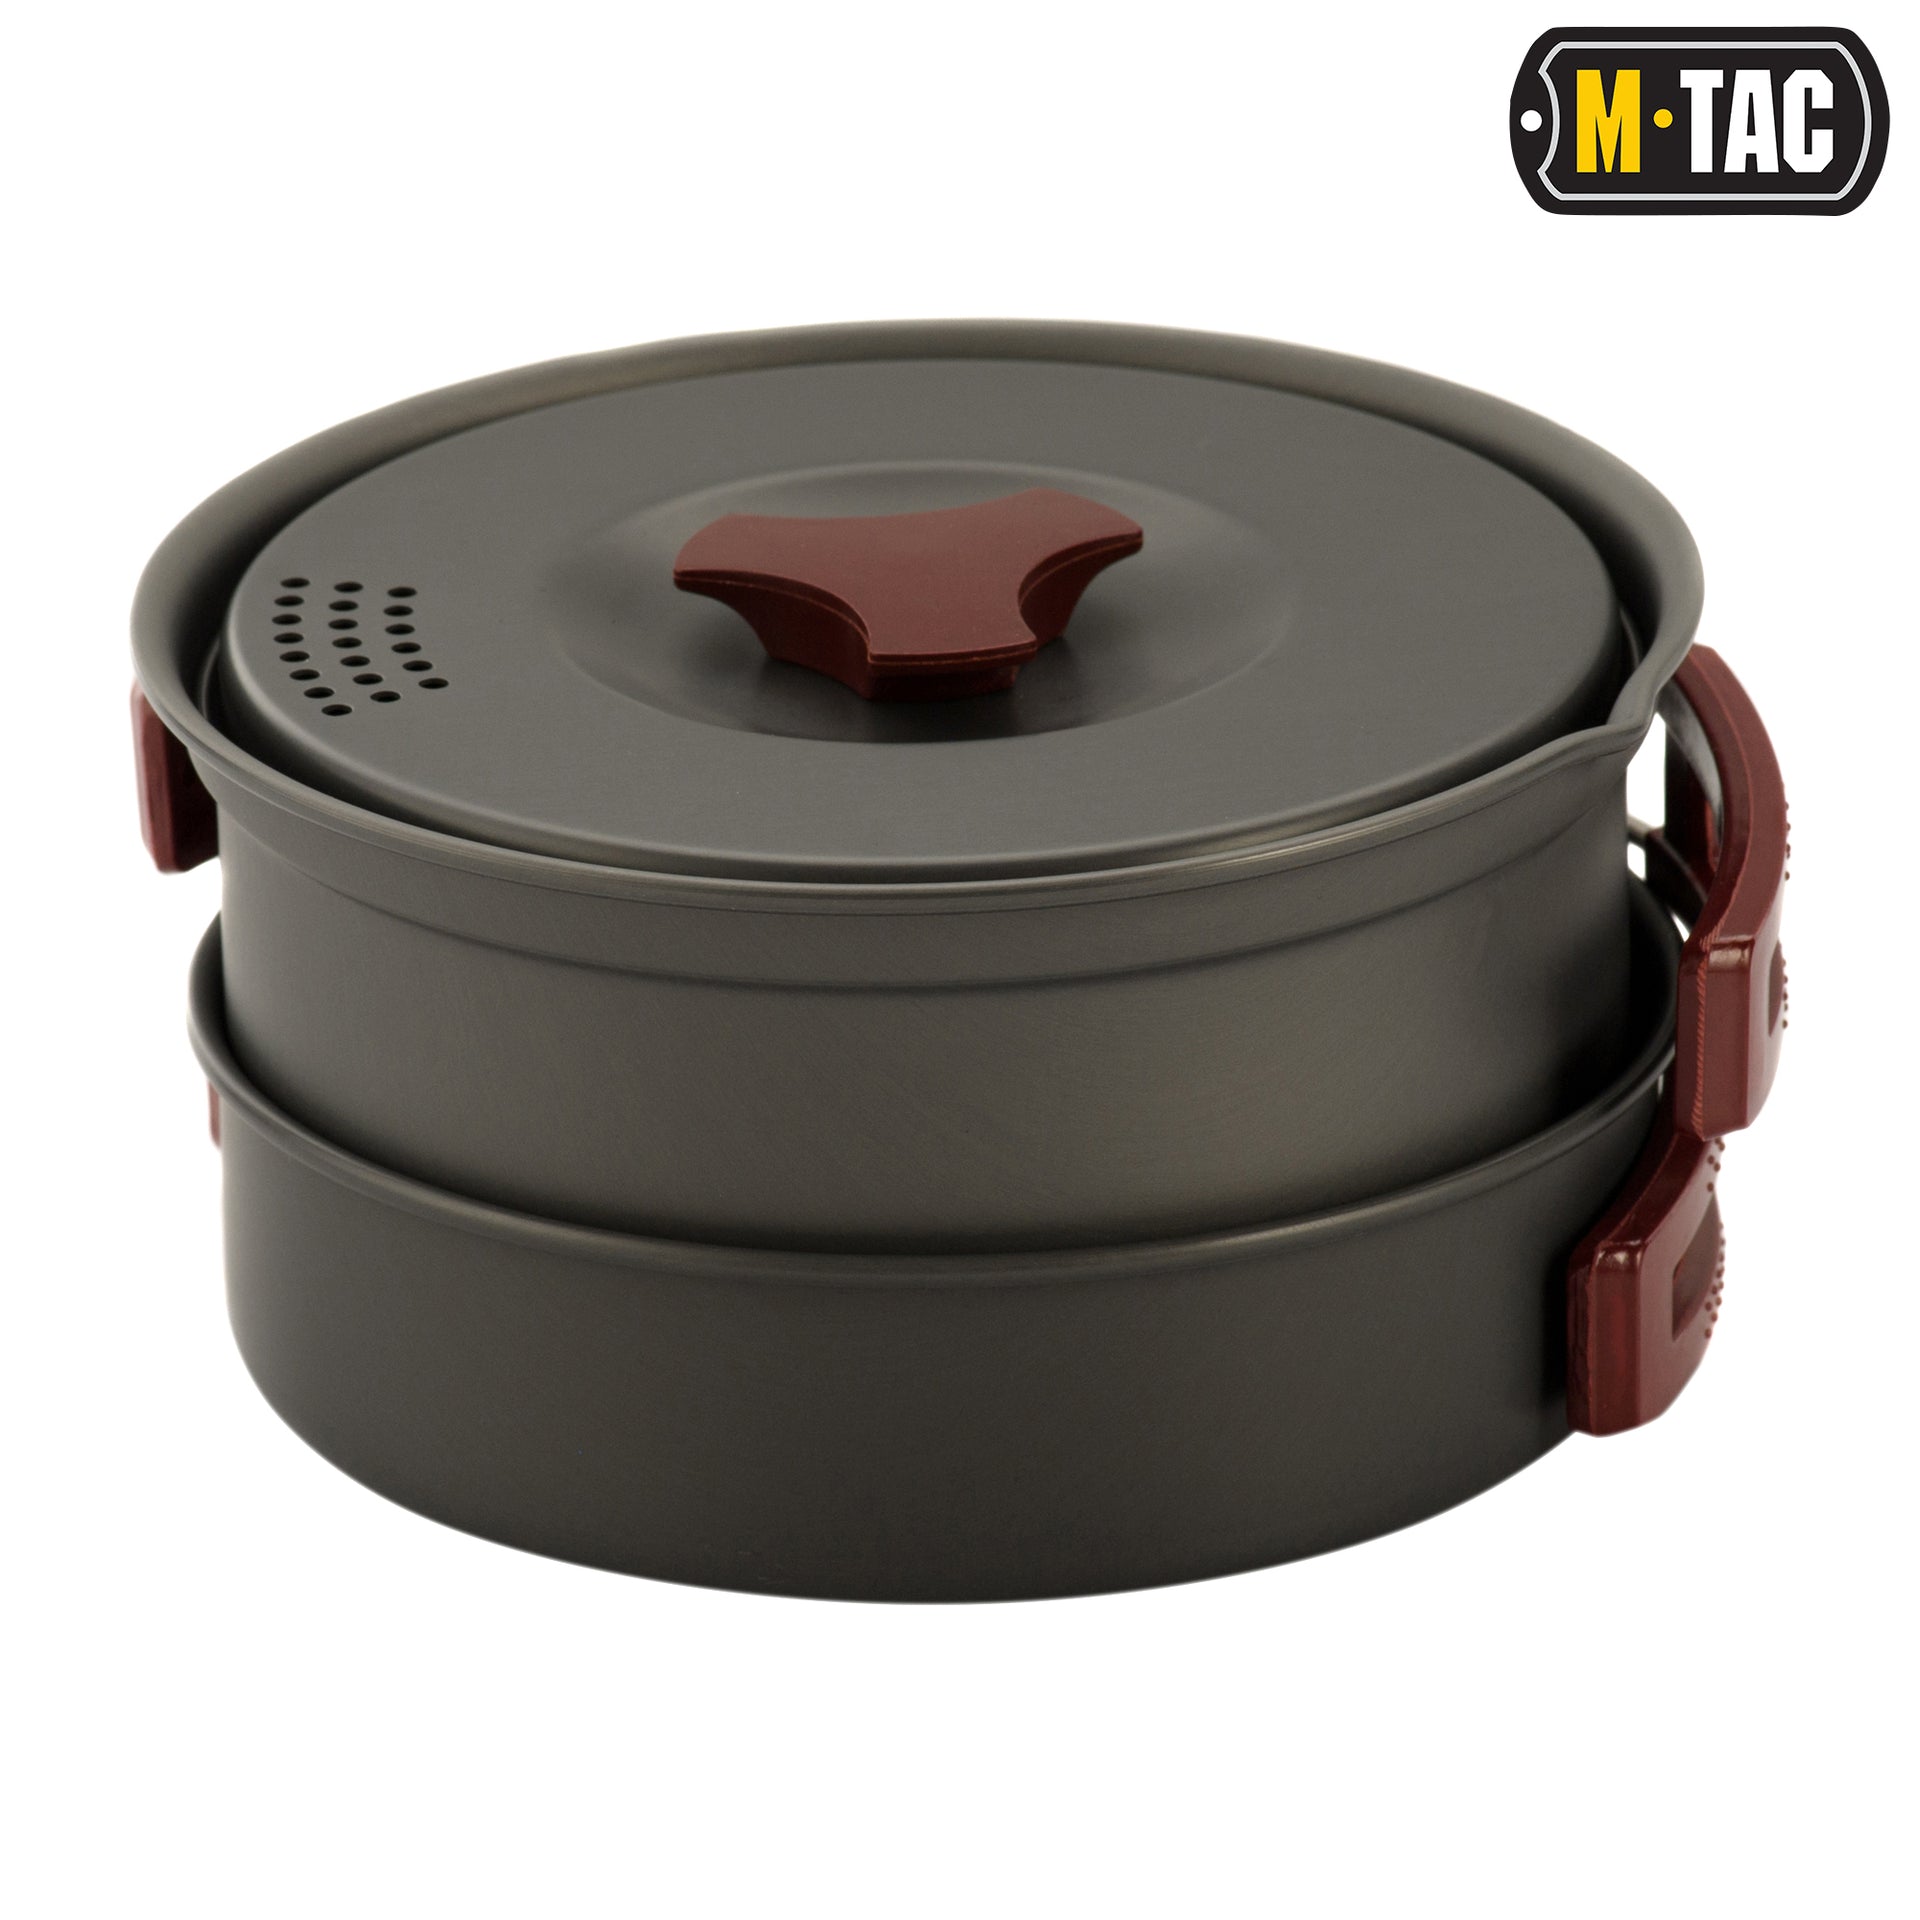 M-Tac Individual Cookware Set